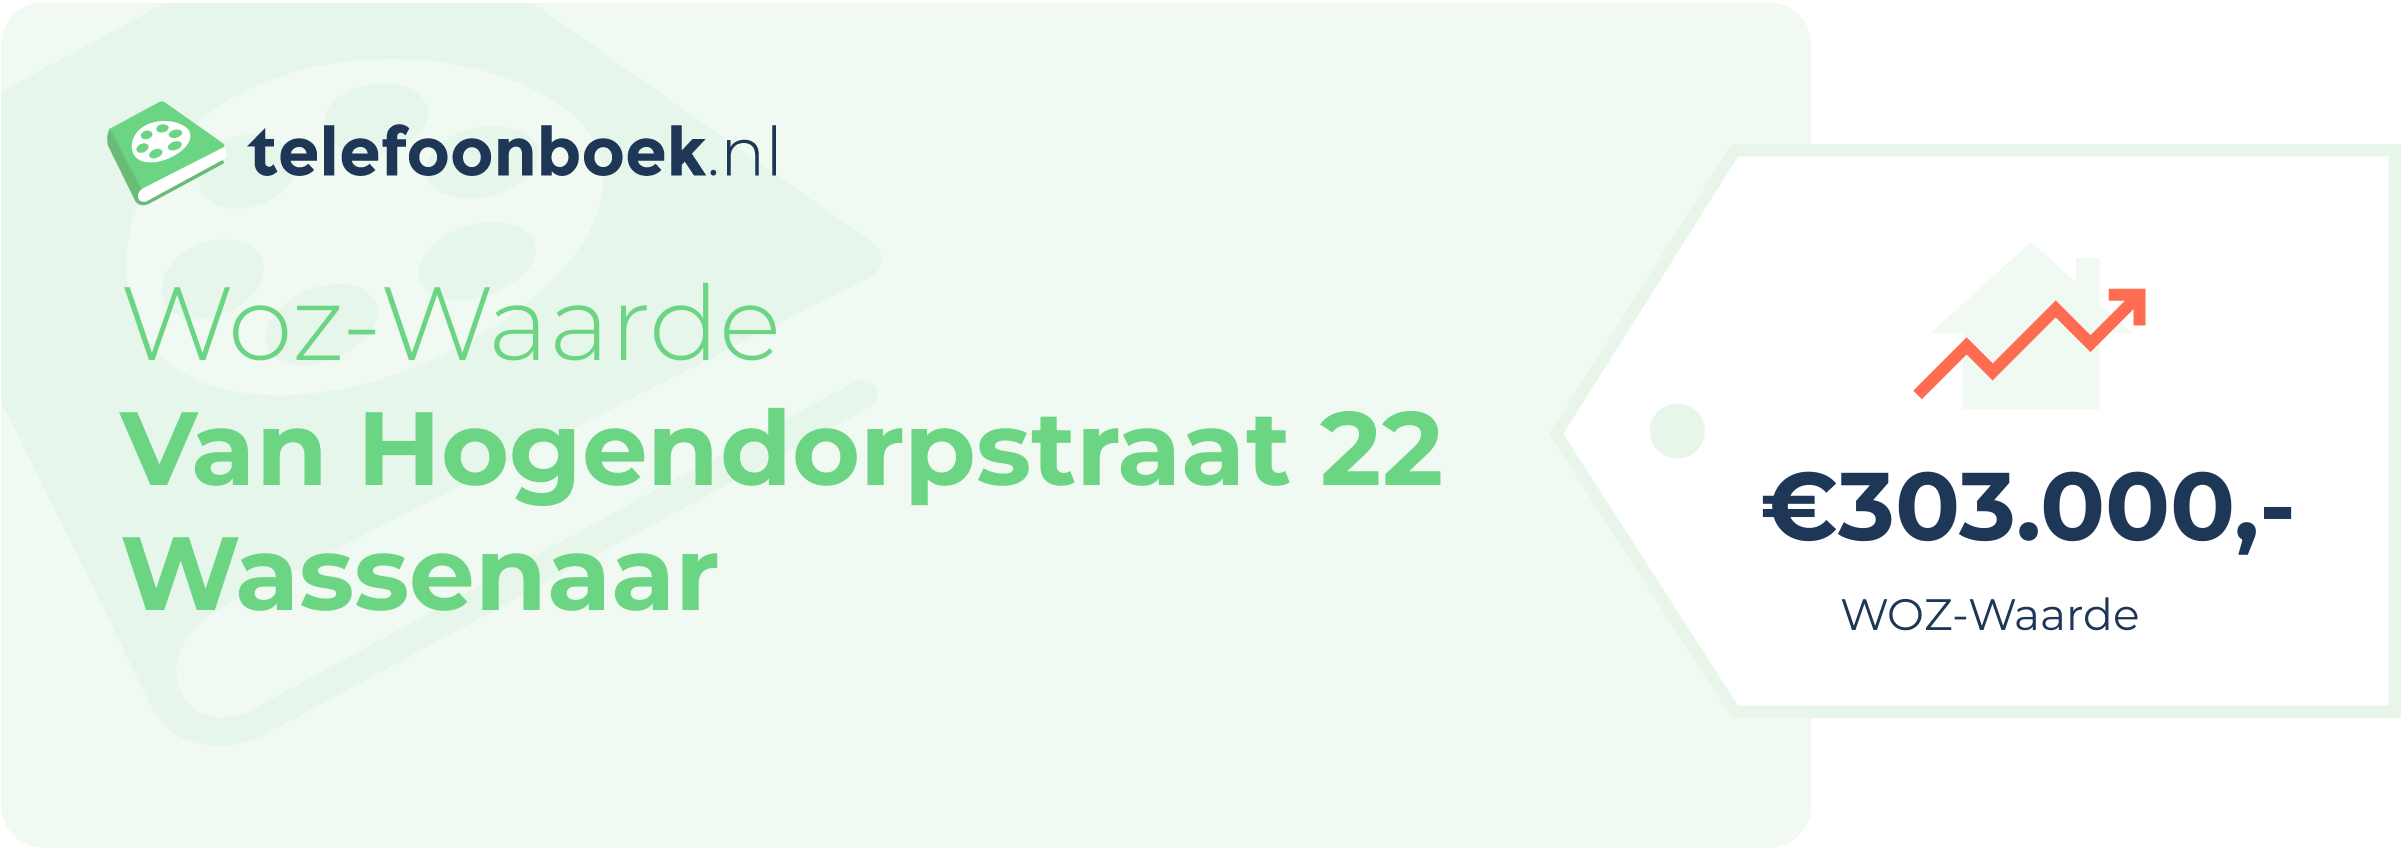 WOZ-waarde Van Hogendorpstraat 22 Wassenaar